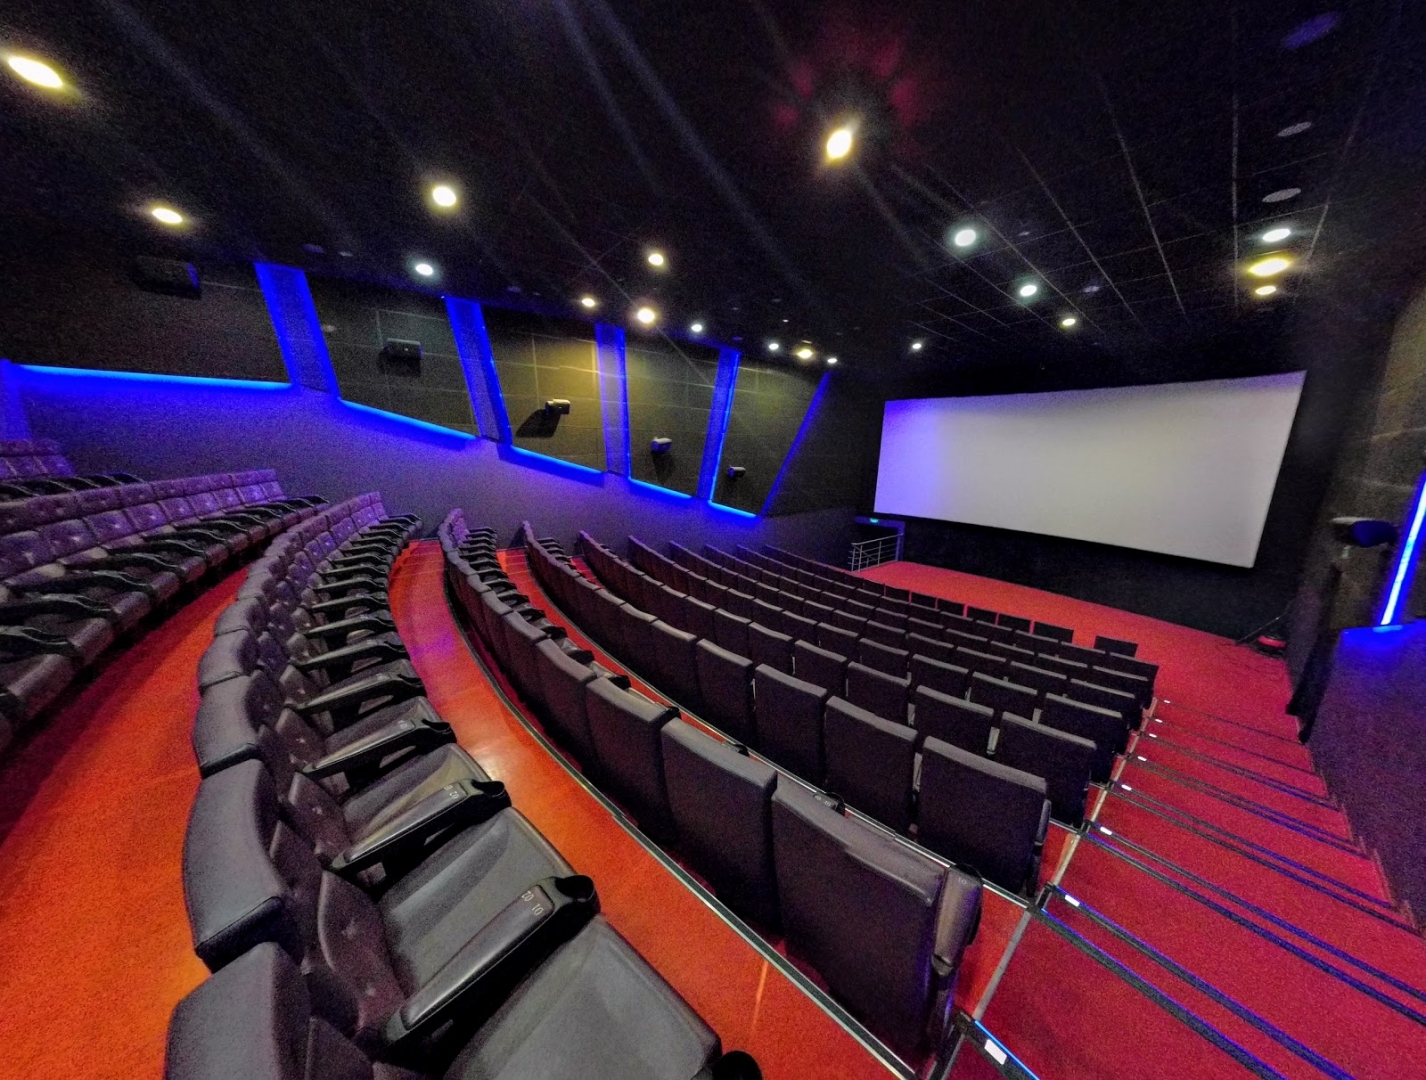 Лучший кинотеатр в россии. IMAX кинотеатр Питерленд. Питерлэнд зал 11 IMAX.